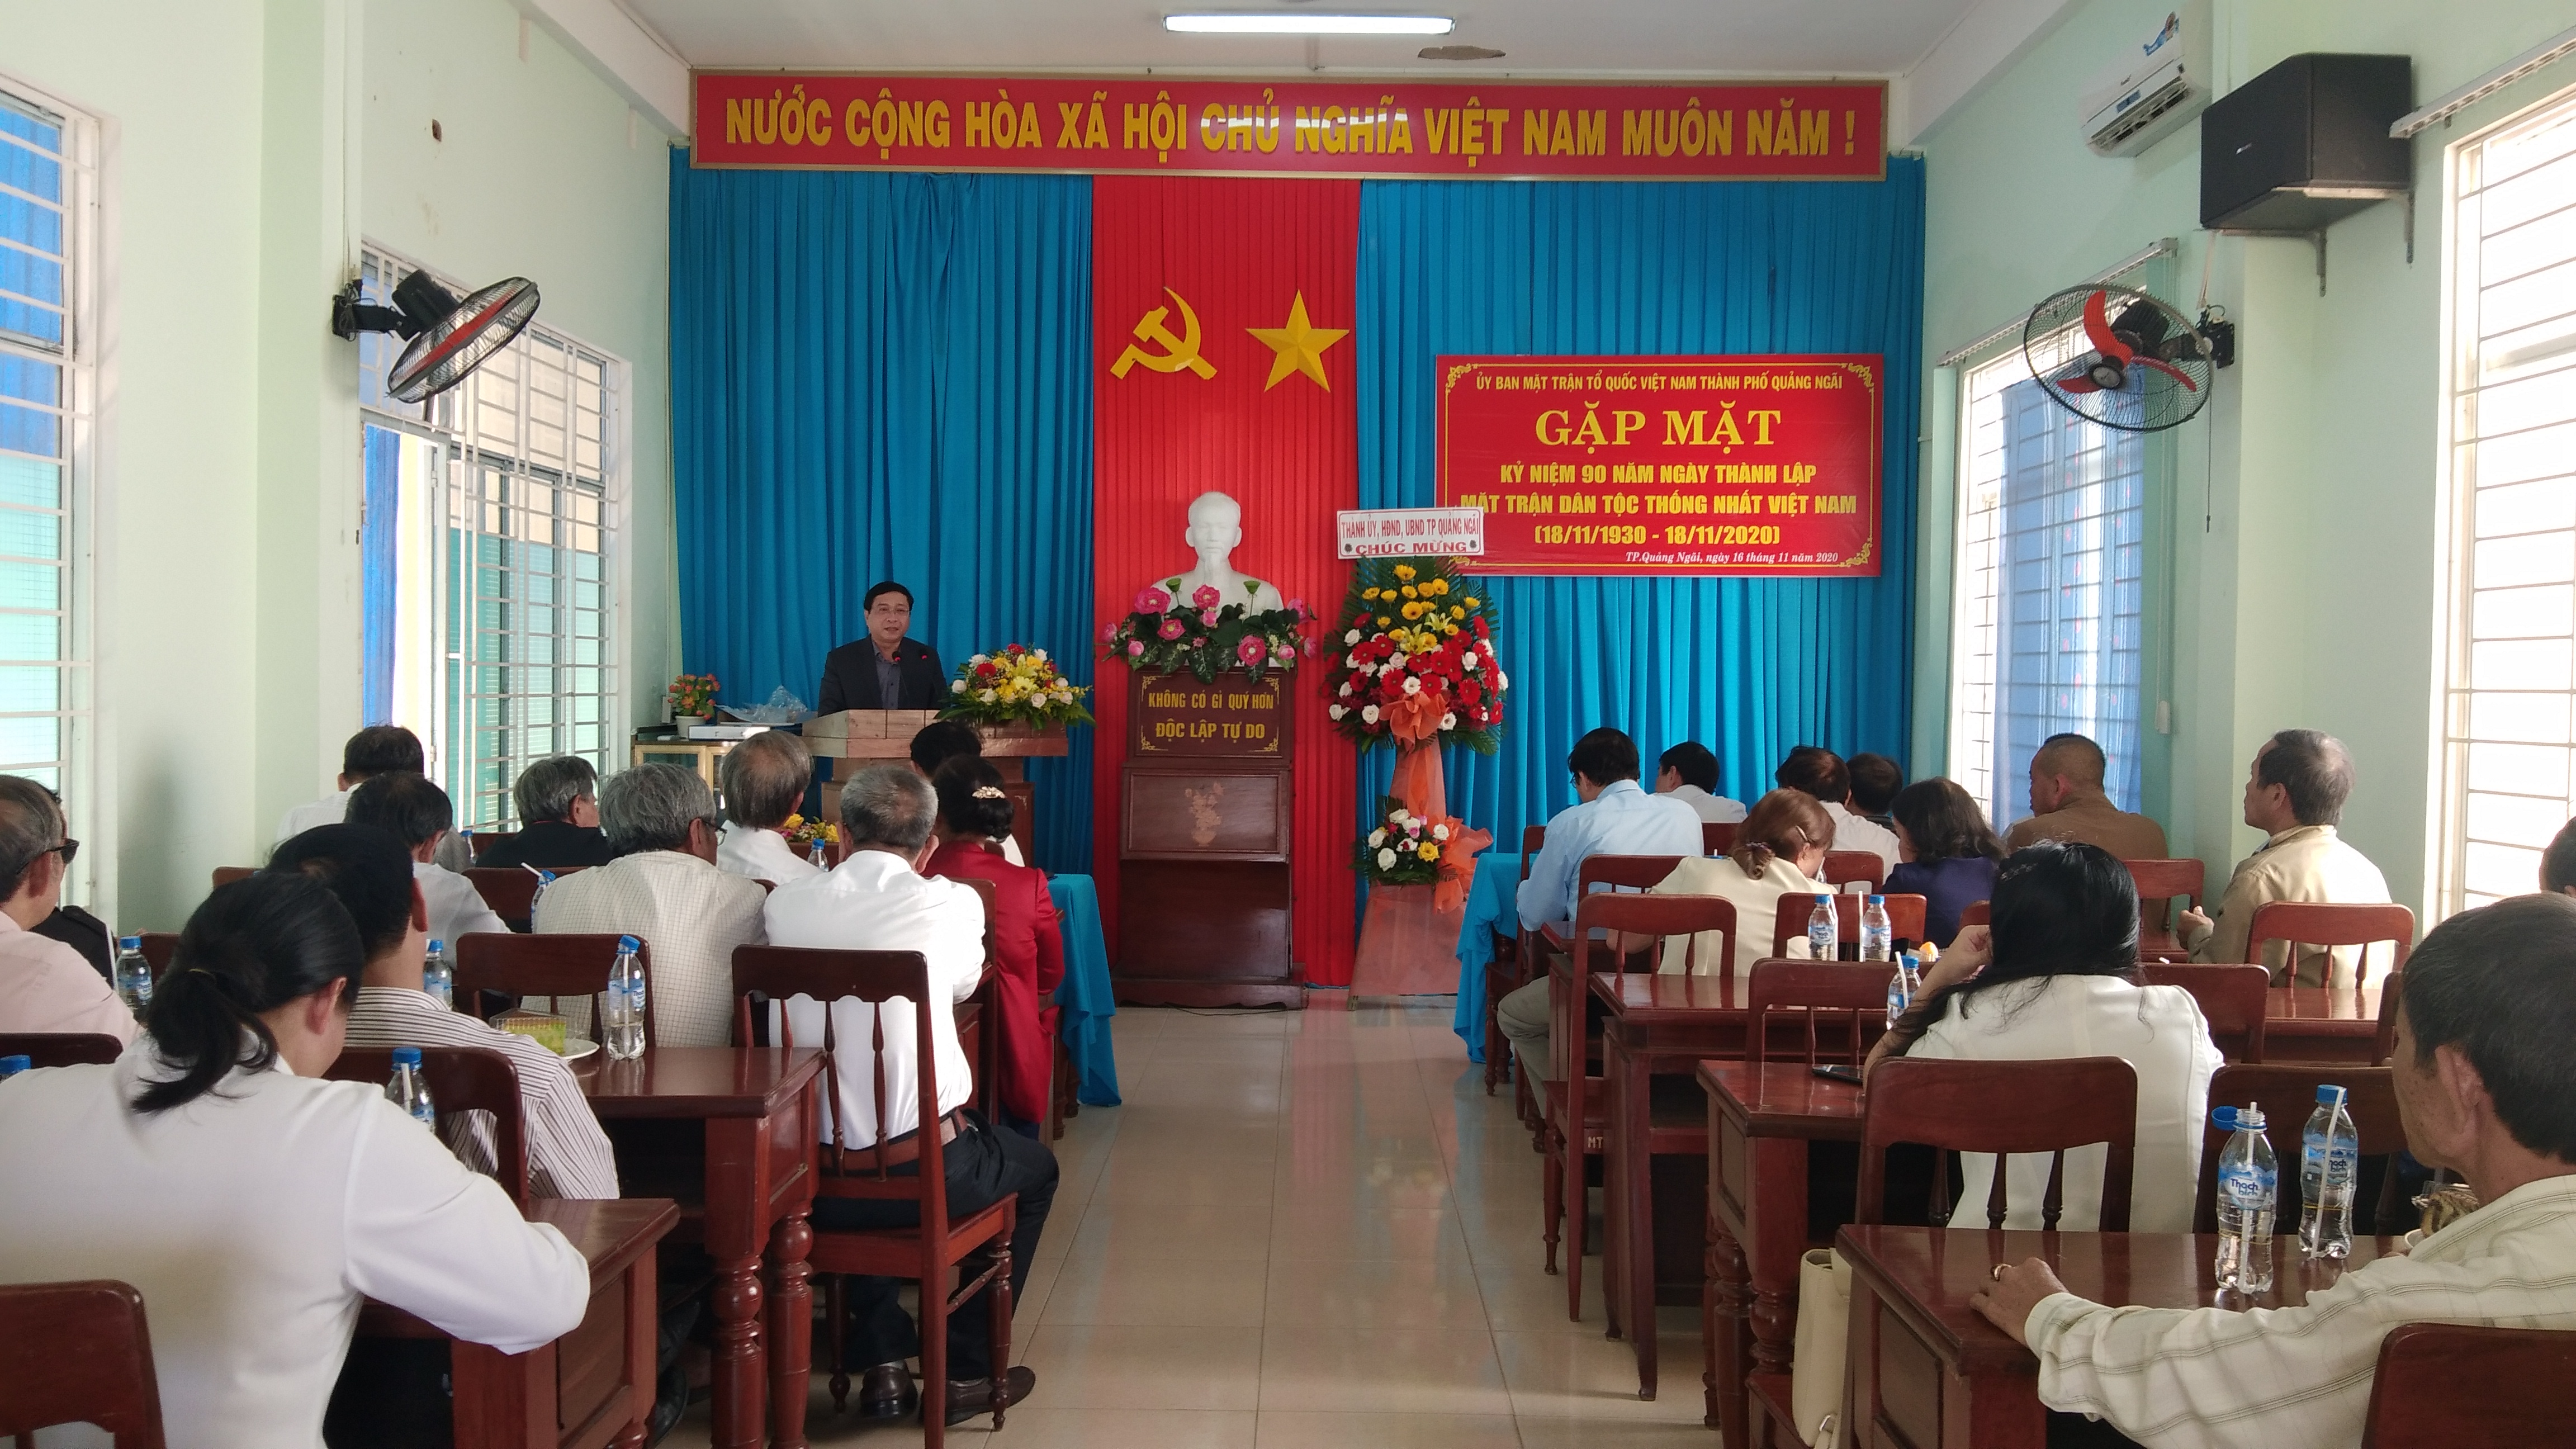 Mặt trận Tổ quốc Việt Nam thành phố tổ chức gặp mặt kỷ niệm 90 năm Ngày truyền thống Mặt trận dân tộc thống nhất Việt Nam (18/11/1930 - 18/11/2020)